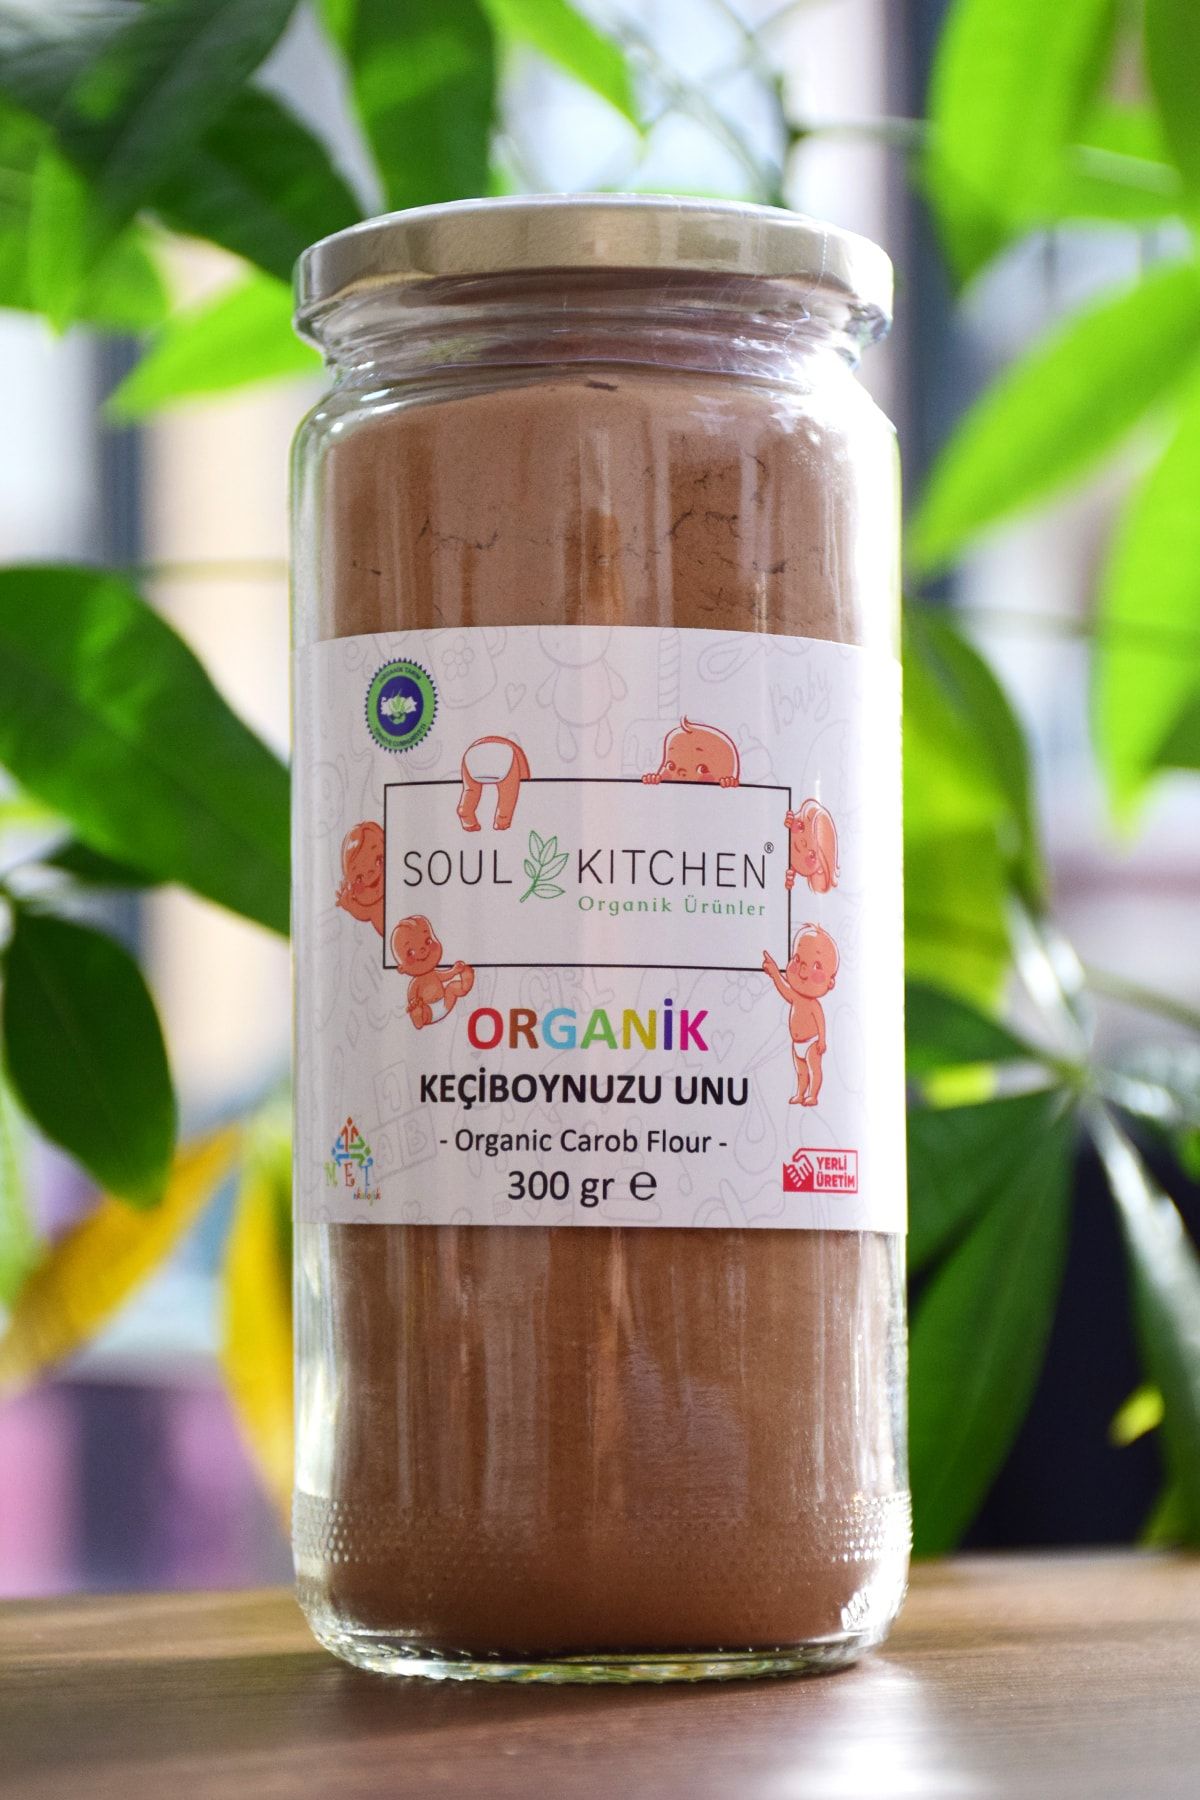 Soul Kitchen Organik Ürünler 7ay Organik Bebek Keçiboynuzu Unu 300gr -sertifikalı Organik